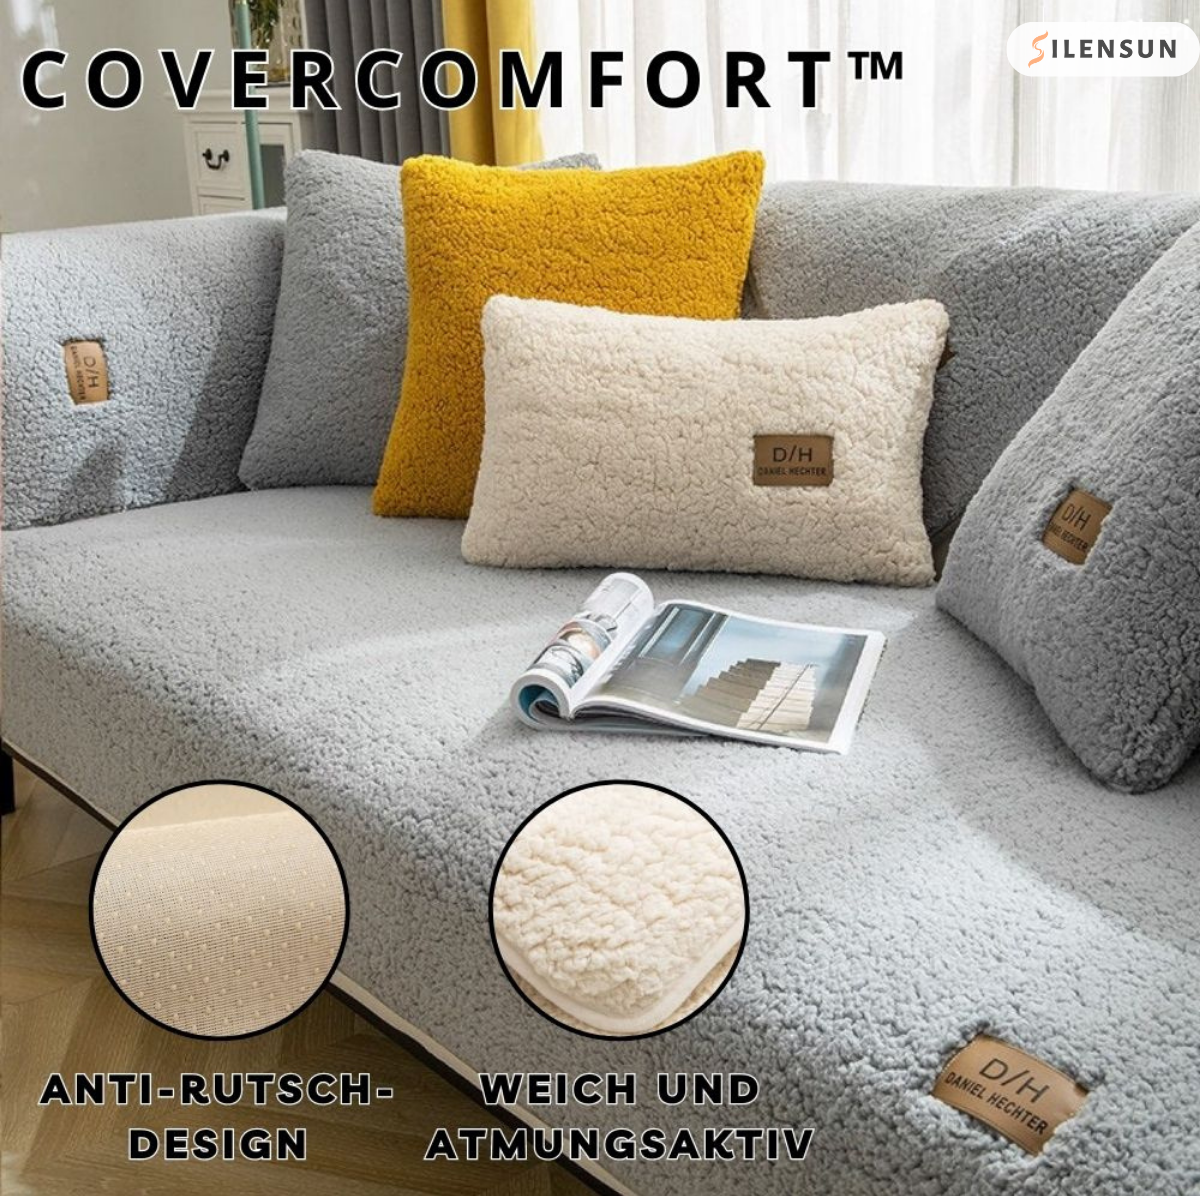 CoverComfort™ - Geben Sie Ihrem Sofa ein zweites Leben!  1+1 GRATIS